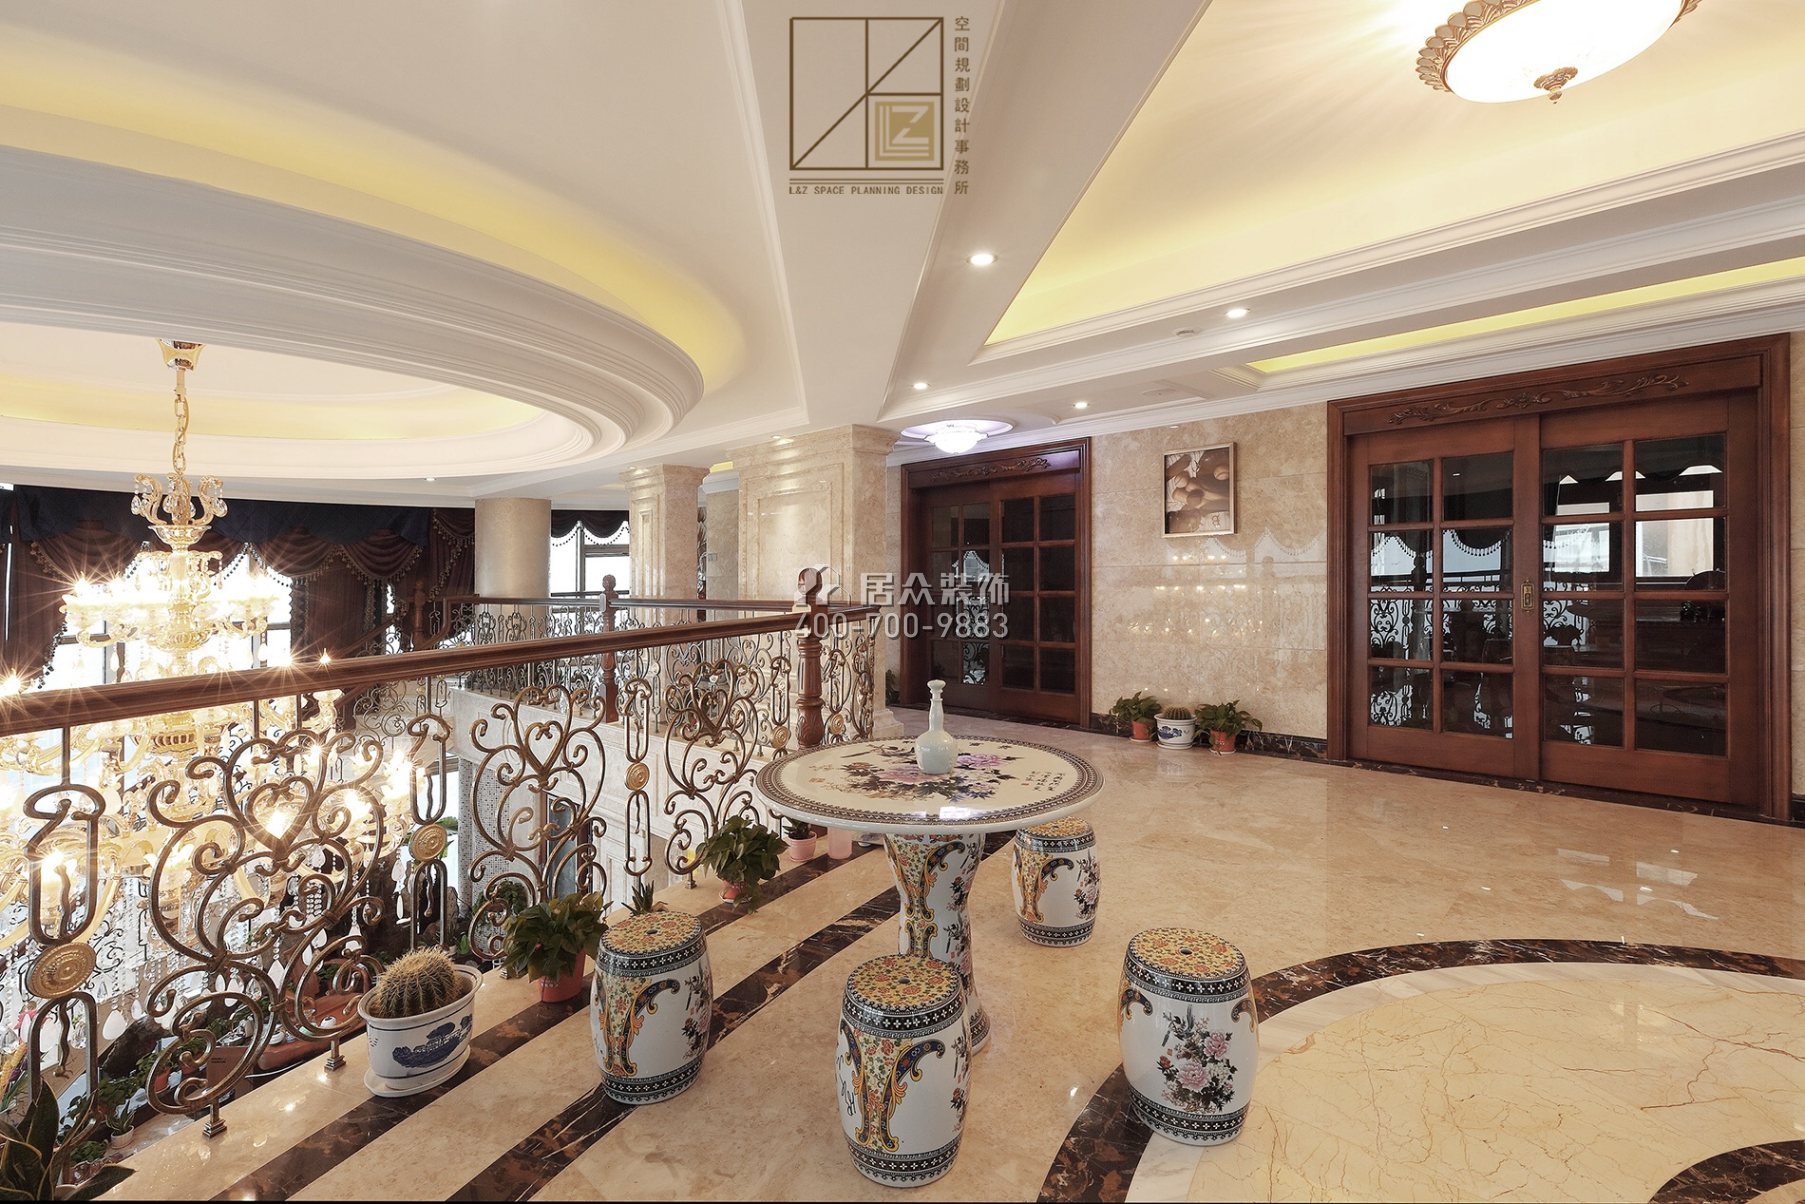 富湾国际720平方米美式风格复式户型茶室开元官网效果图